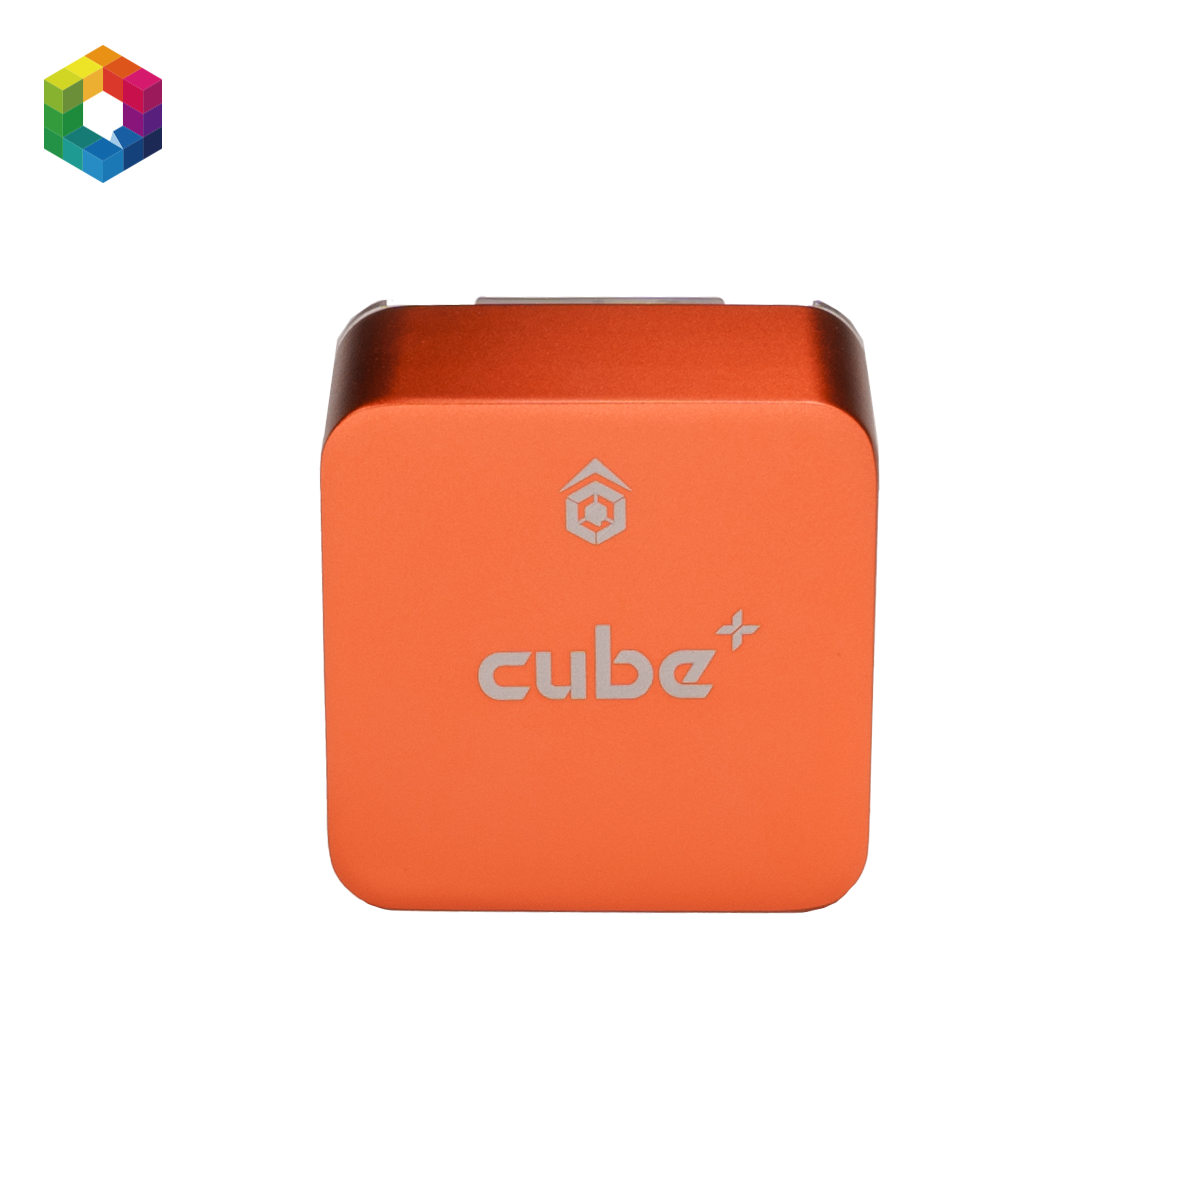 The Cube Orange+